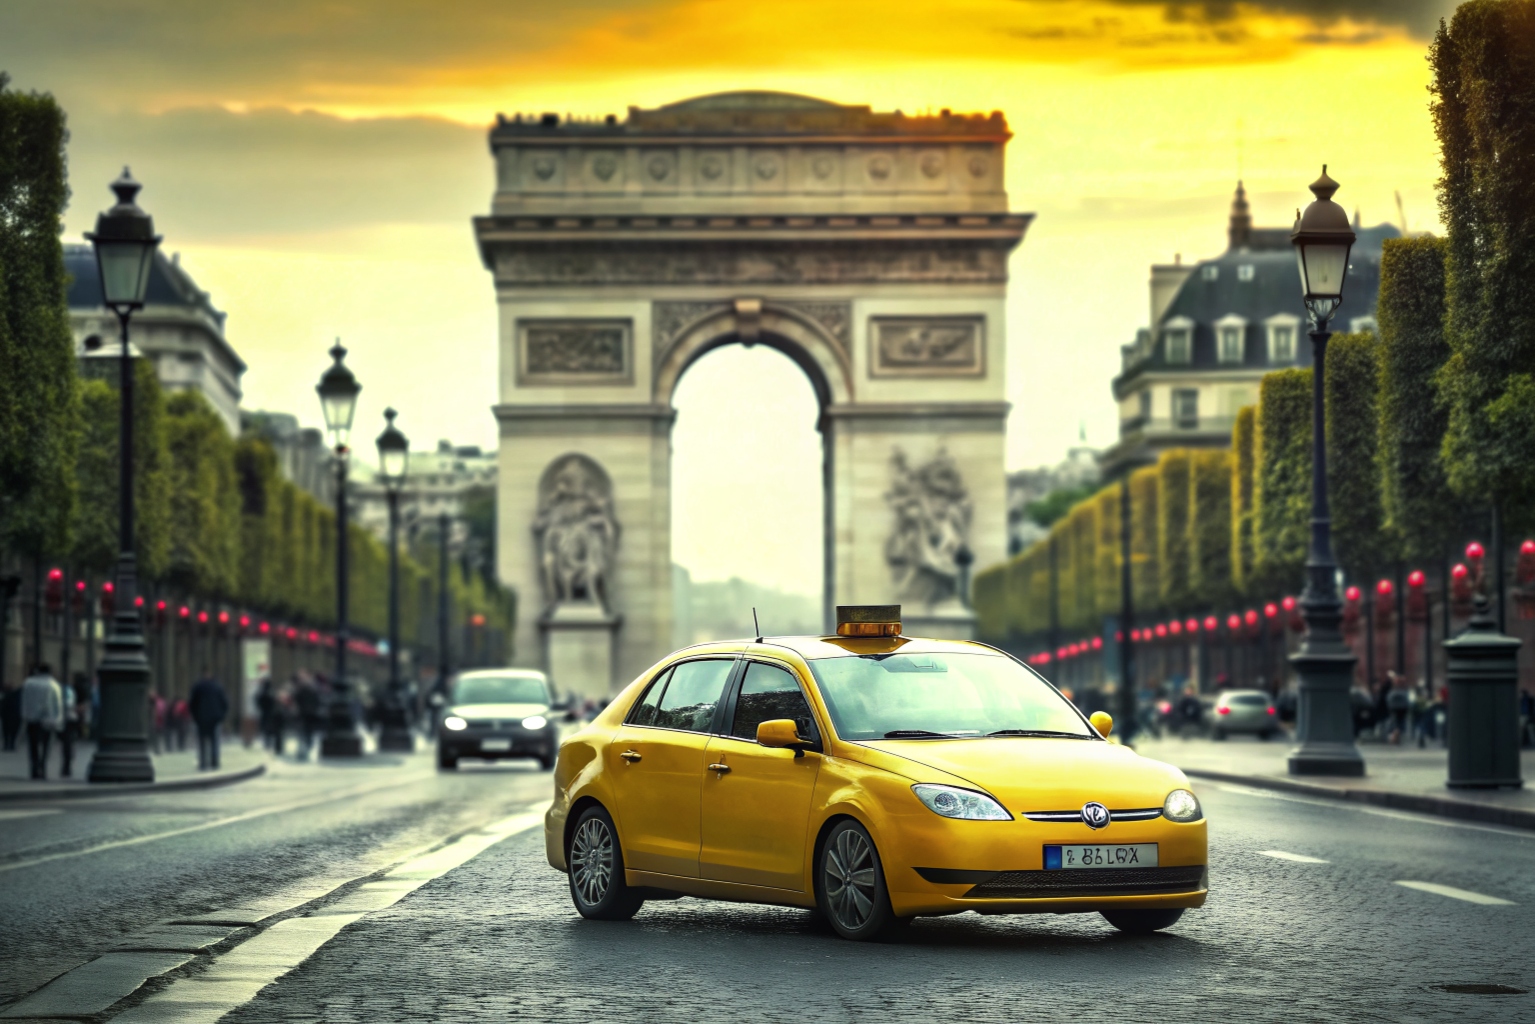 Quels avantages offrent les VTC à Paris par rapport aux taxis traditionnels ?